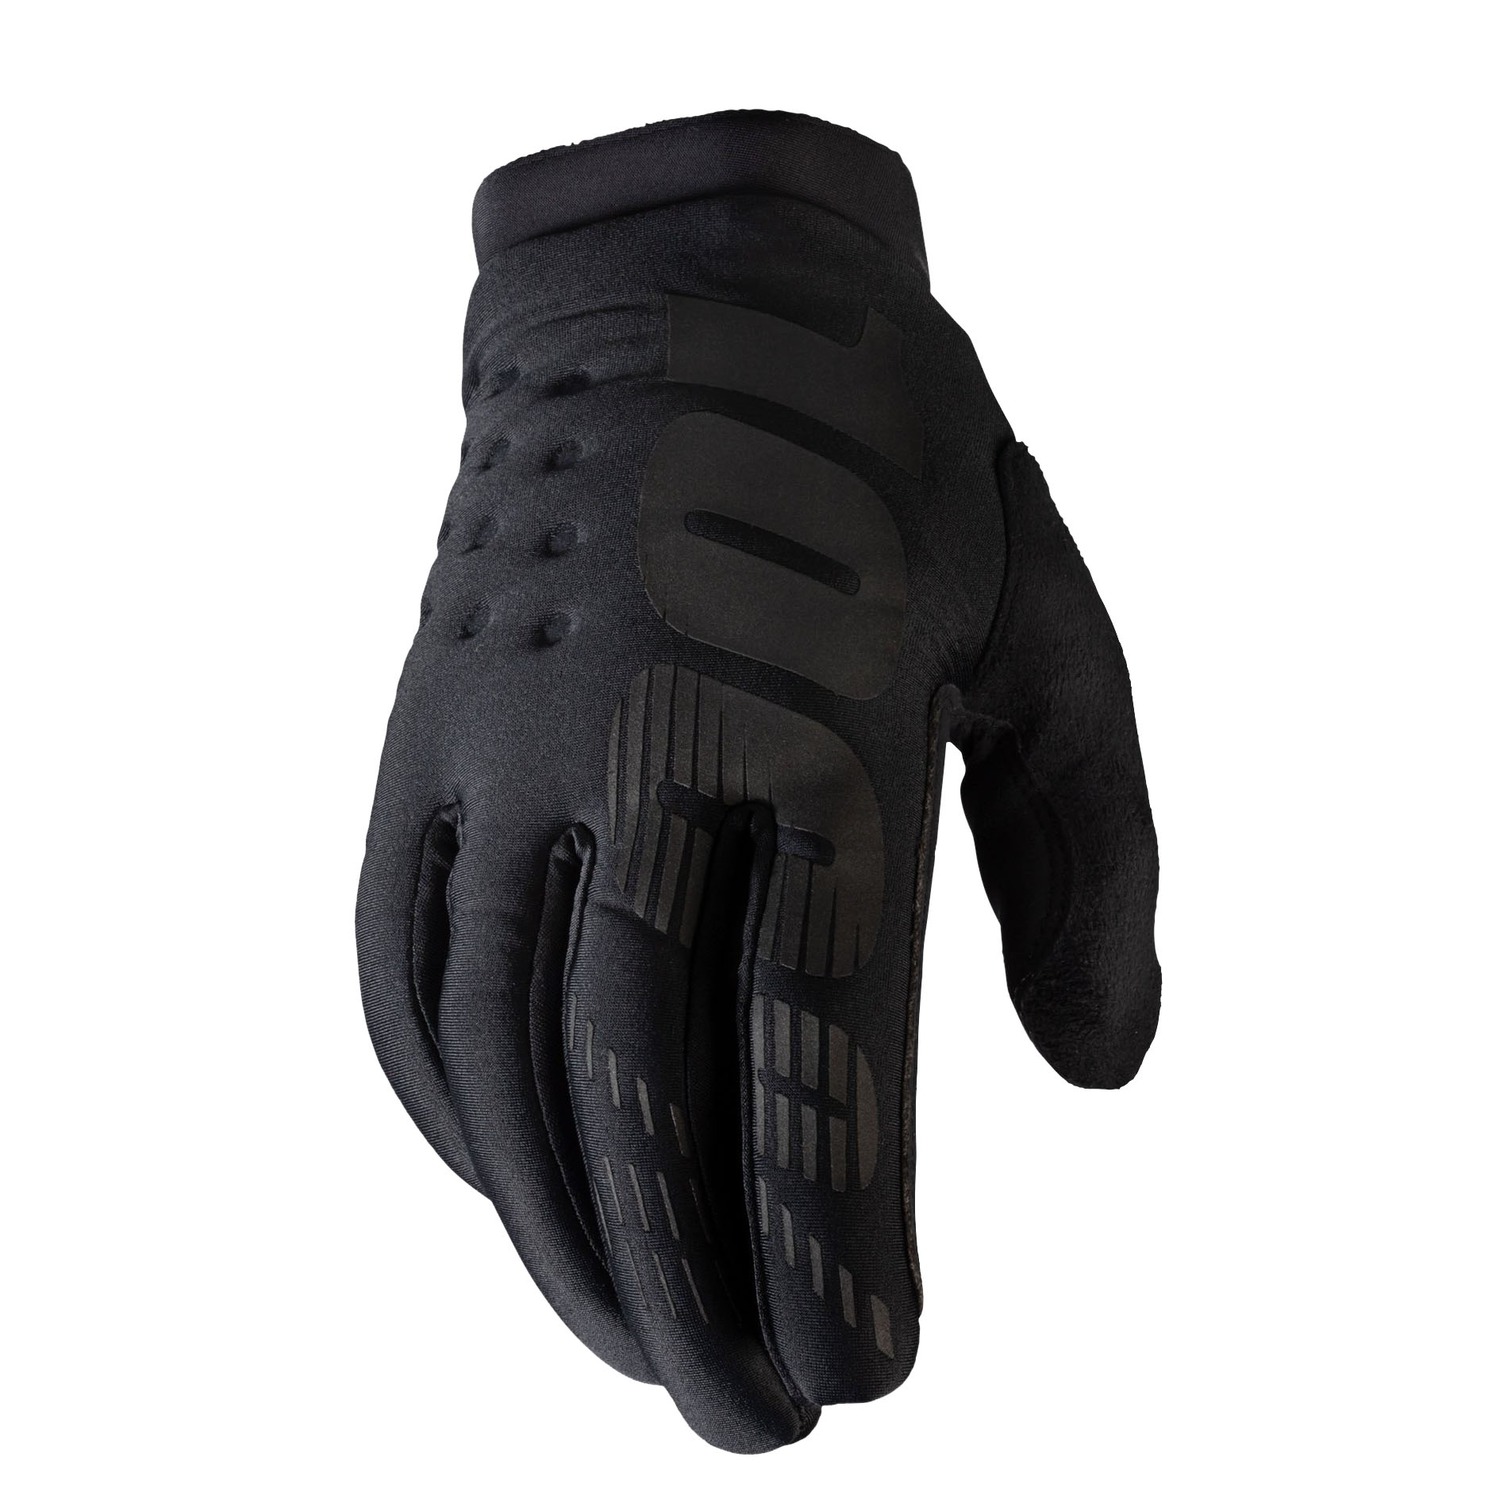 rukavice BRISKER, 100% dámské (černá/šedá)